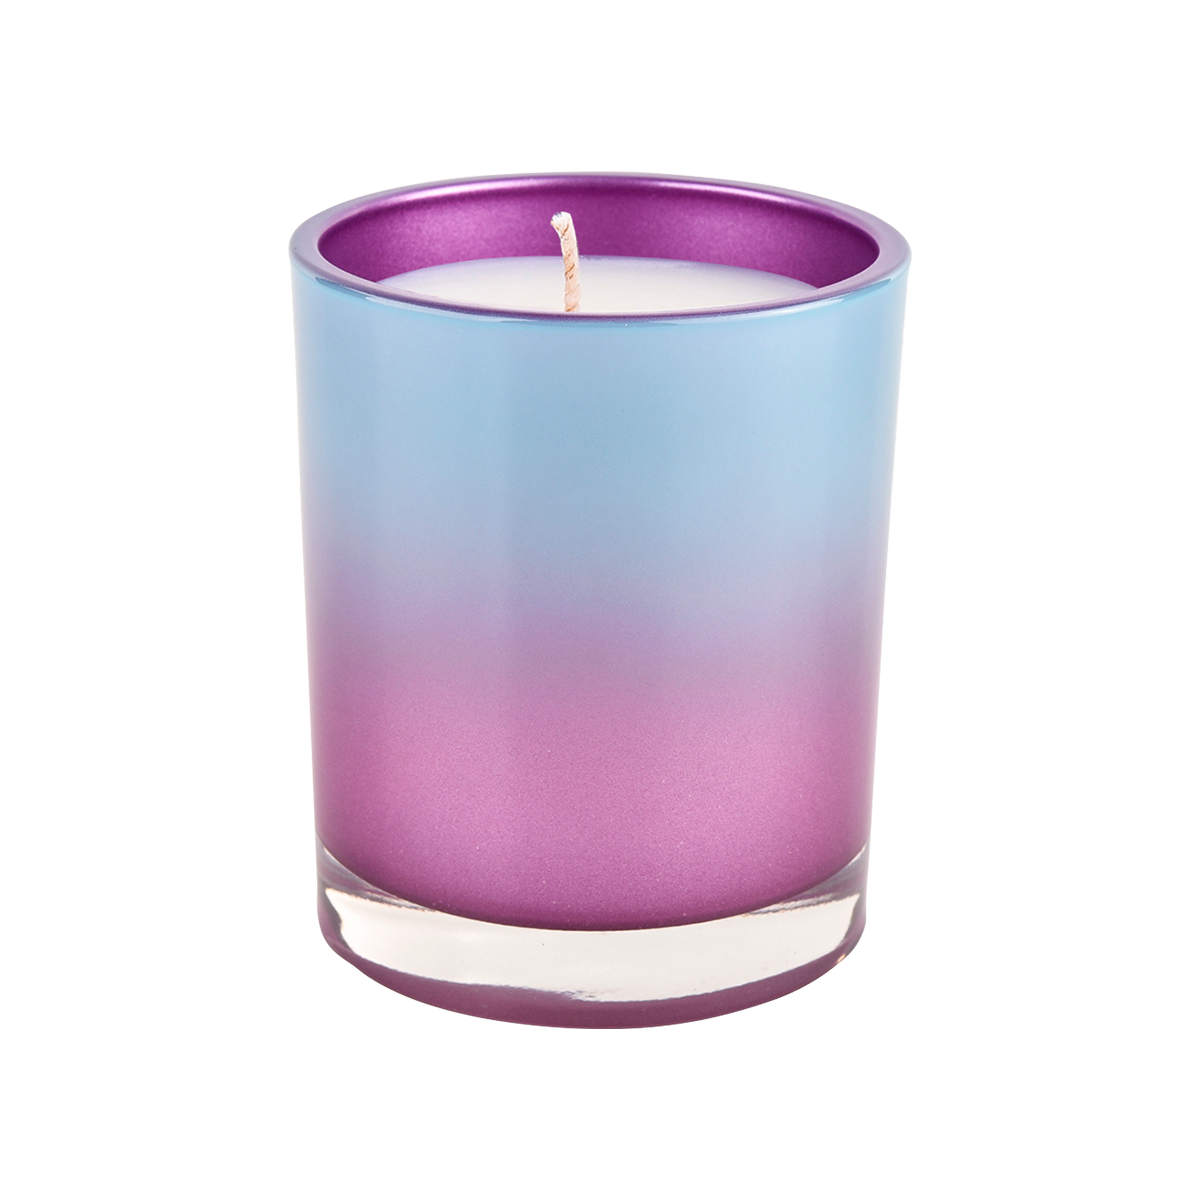 Стеклянный контейнер для свечей на 10 унций с прямым краем, фиолетовый градиент, синее украшение